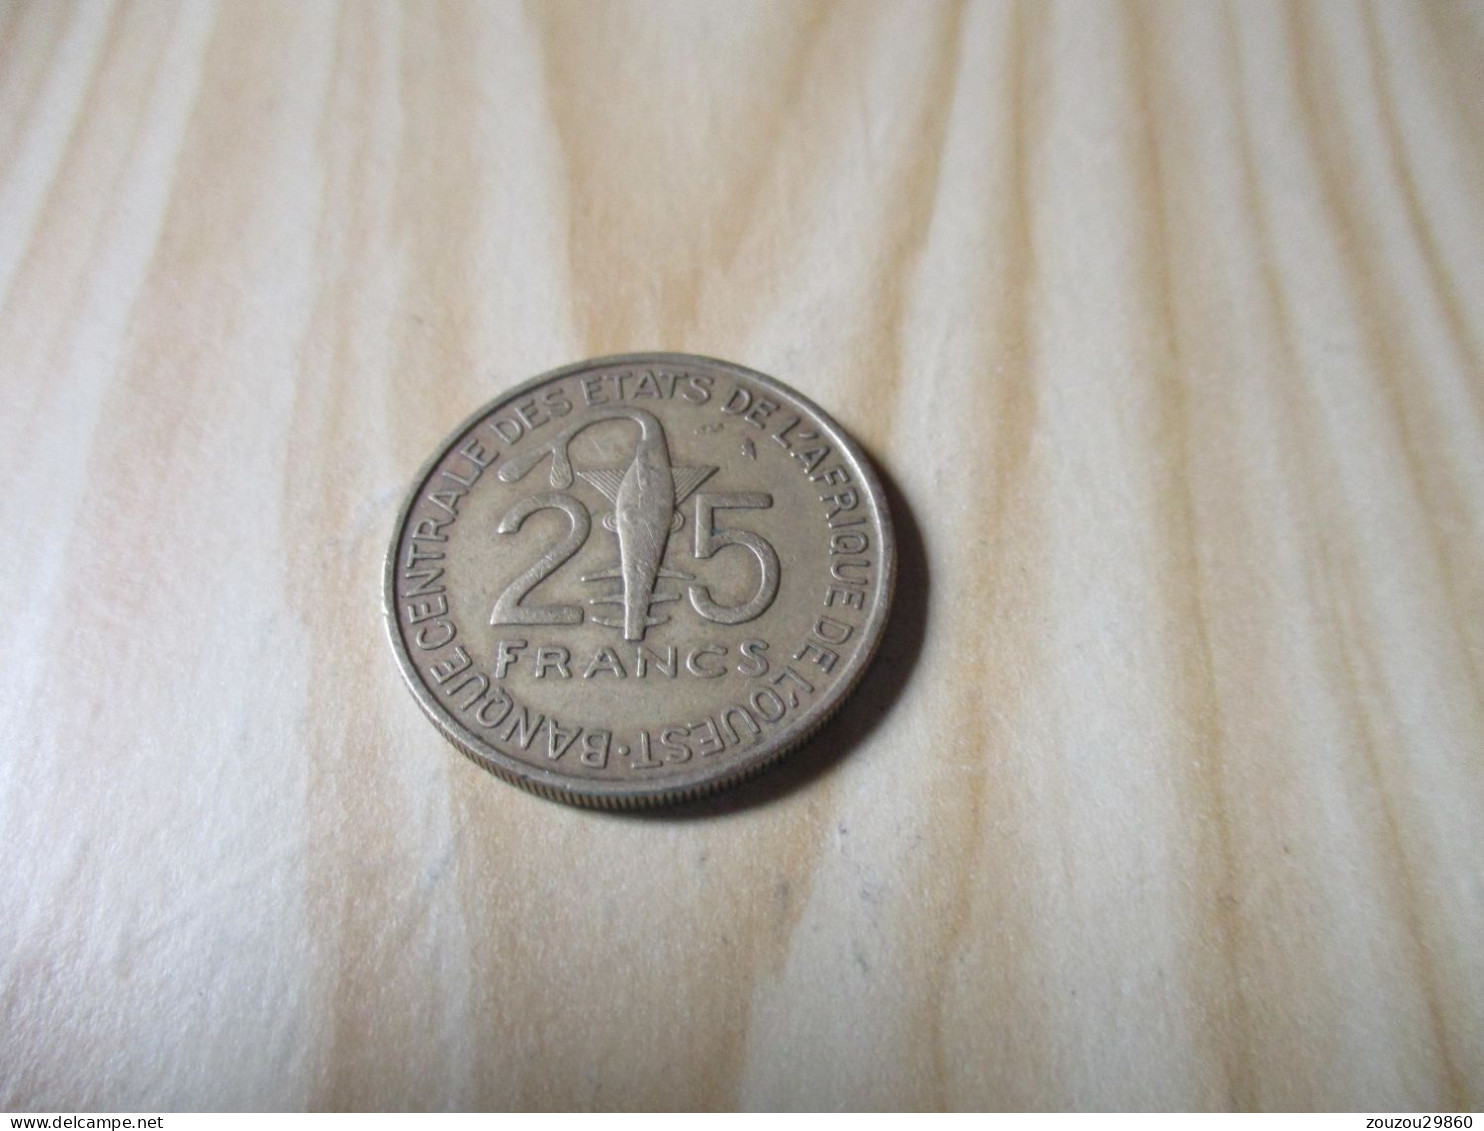 Afrique De L'Ouest - 25 Francs 1971.N°672. - Other - Africa